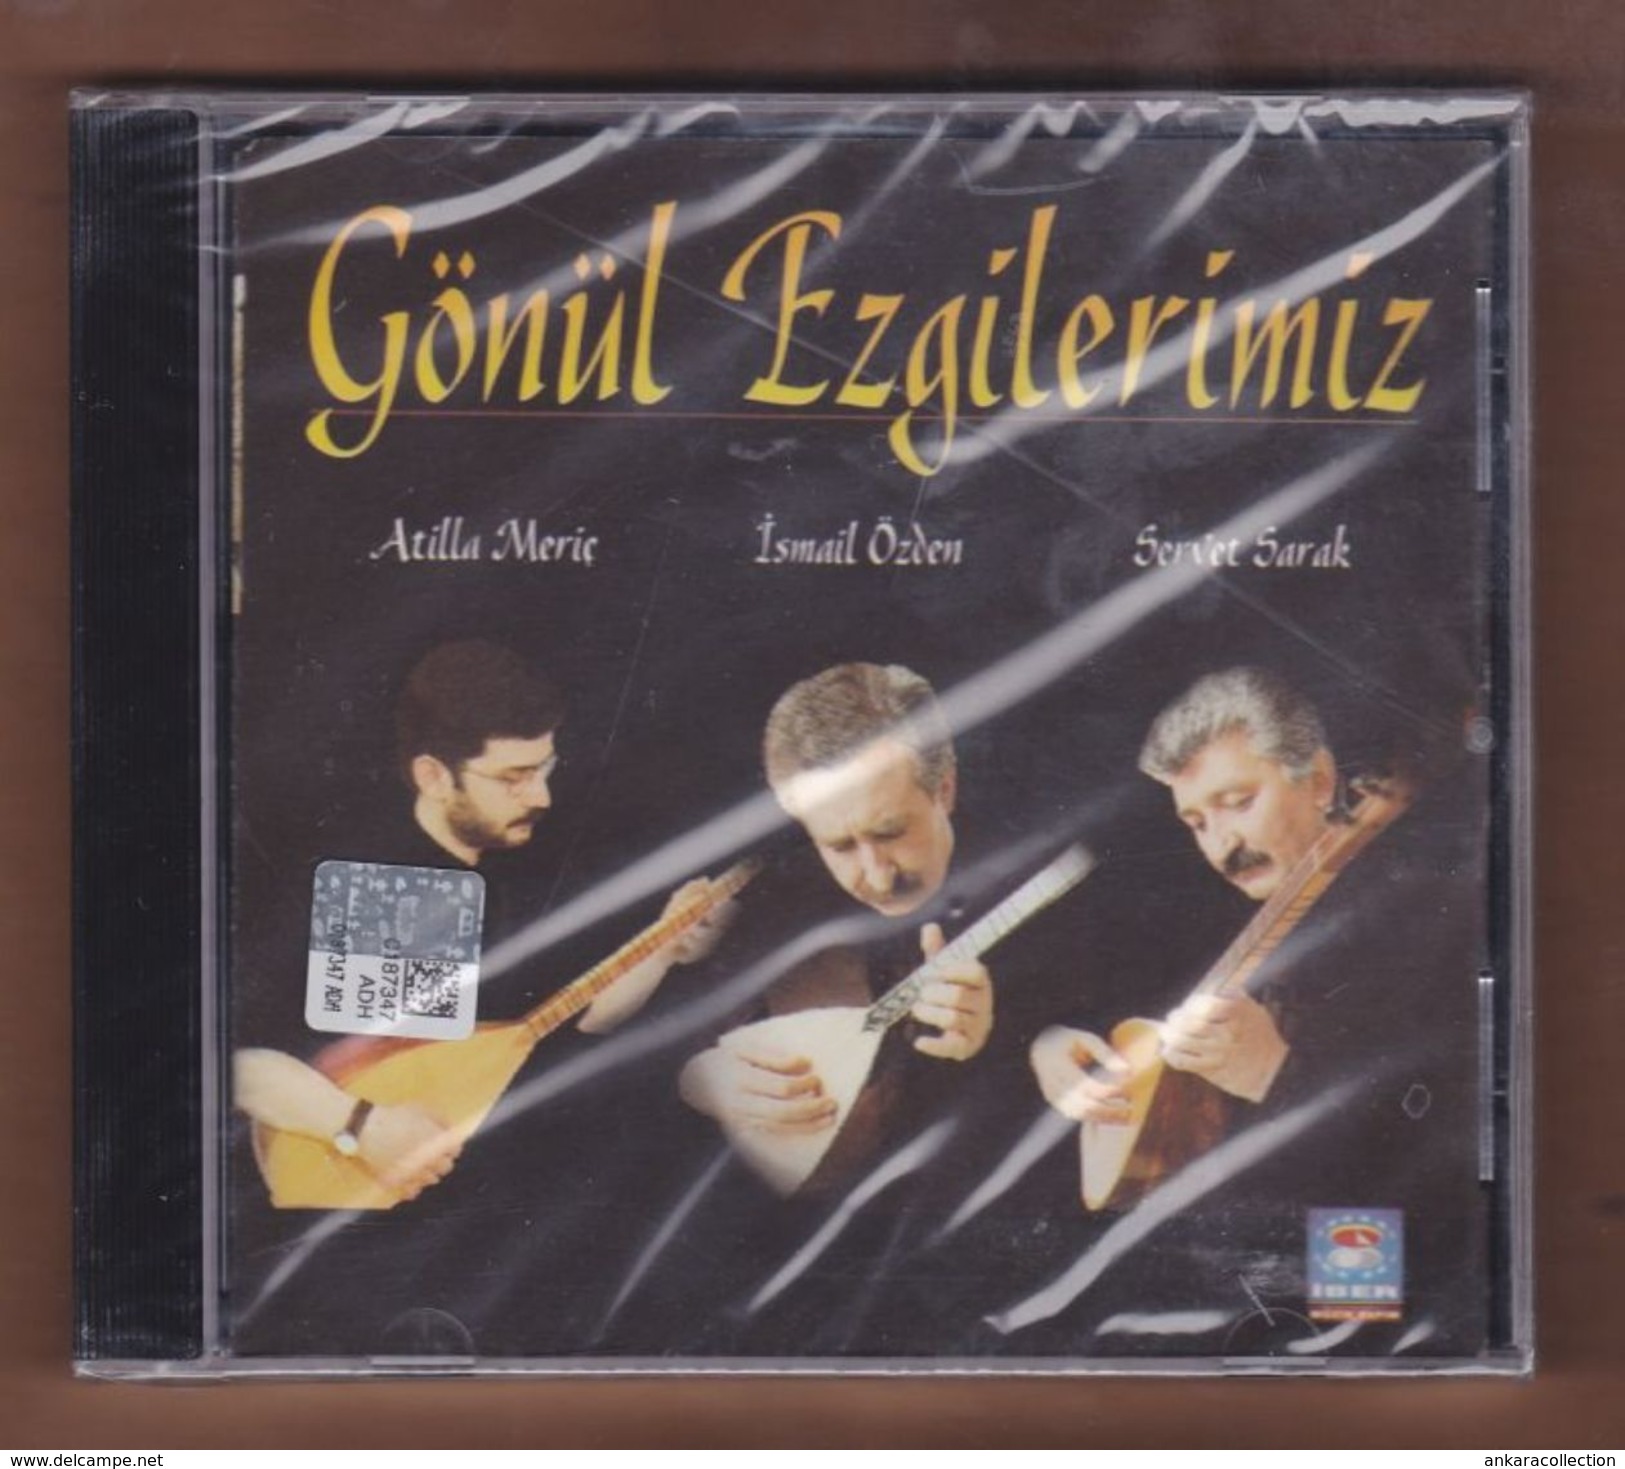 AC -  Atilla Meriç Ismail özden Servet Sarak Gözül Ezgilerimiz BRAND NEW TURKISH MUSIC CD - World Music